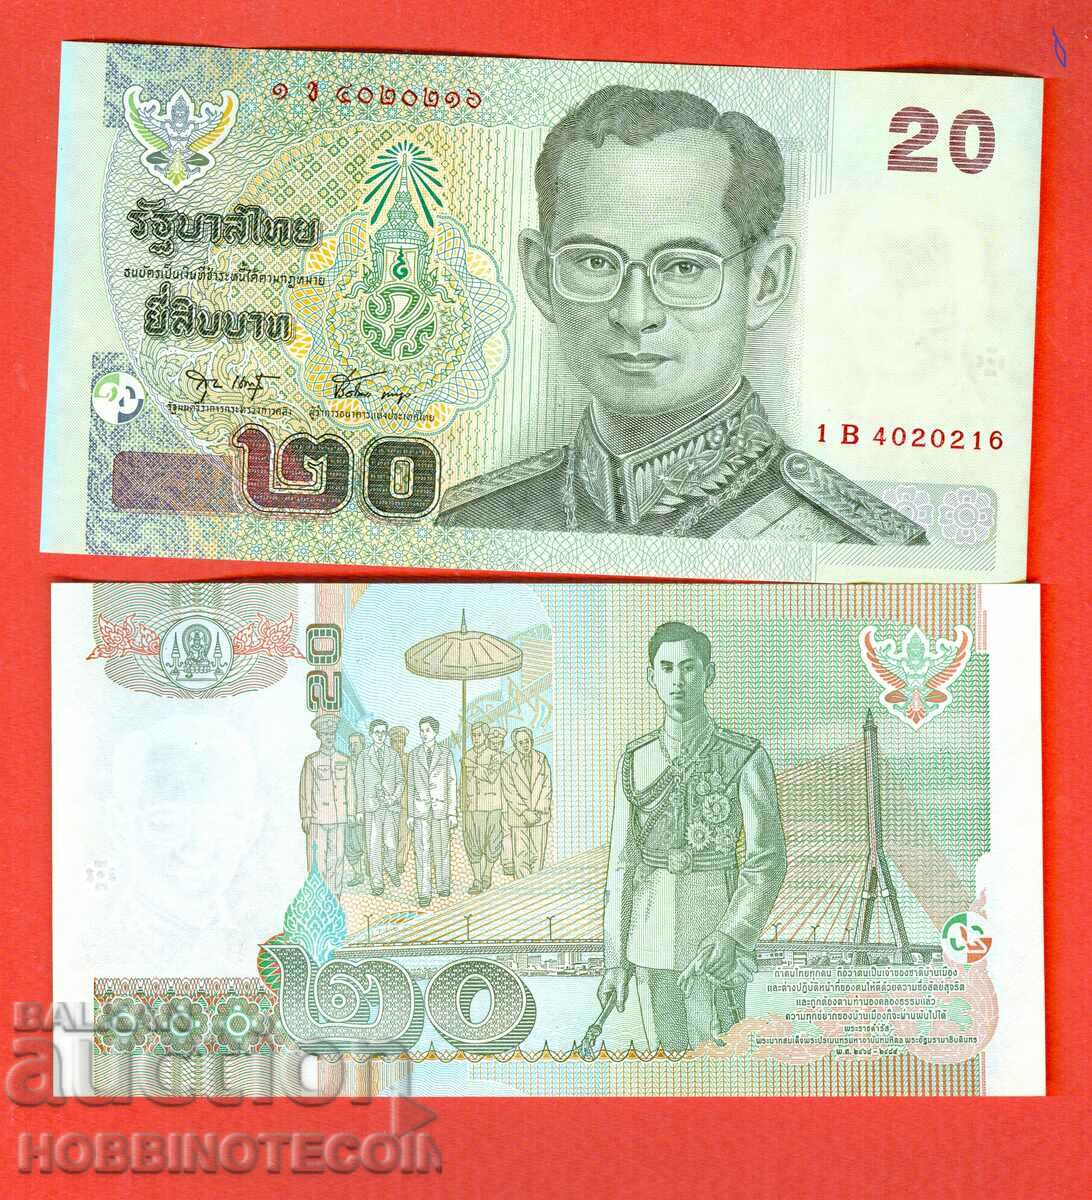 THAILAND 20 BATA issue issue 2003 Under 75 NEW UNC